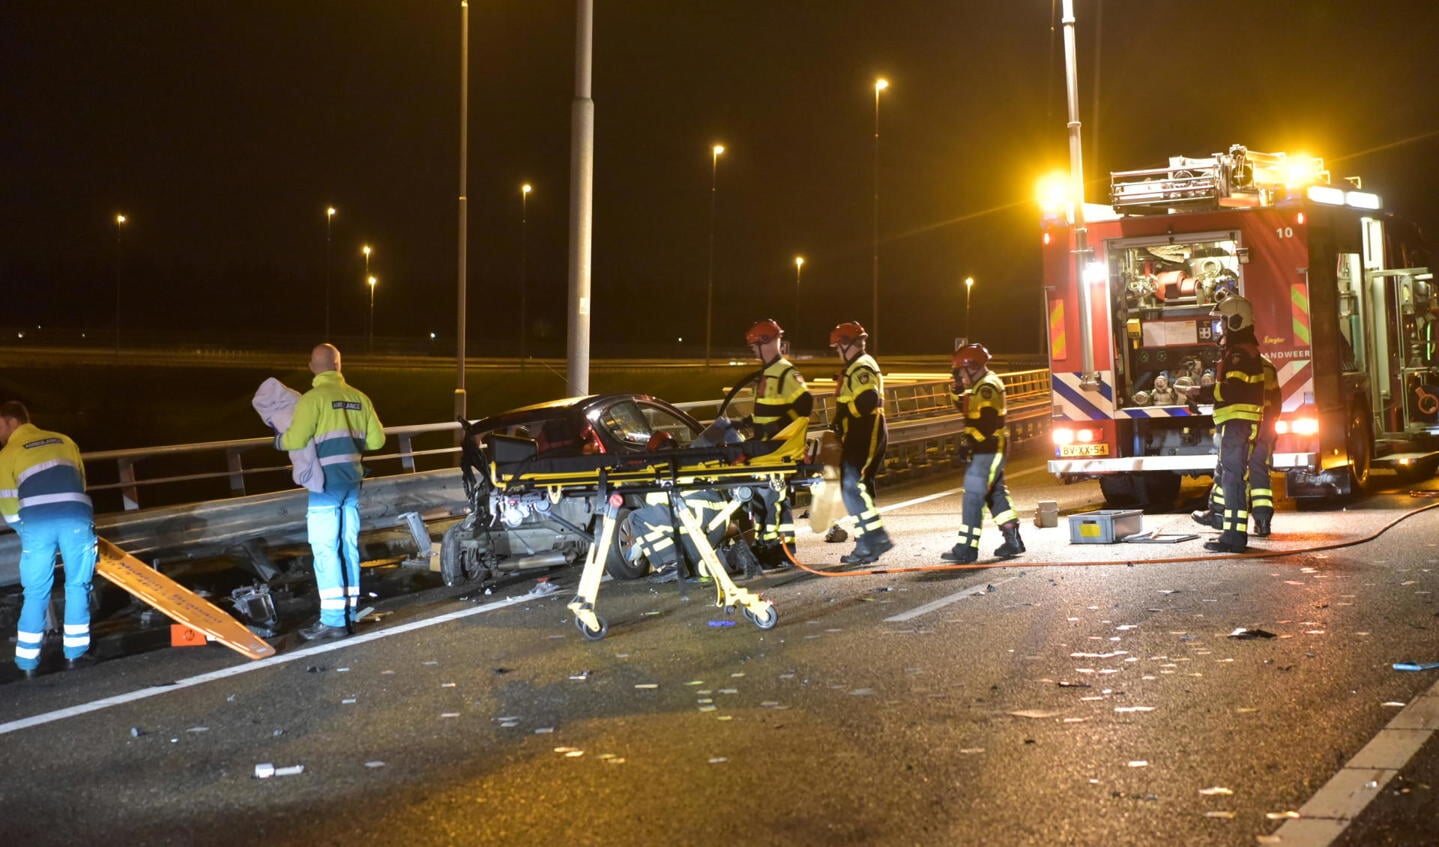 Op de aansluiting van de A16 naar de A58 is dinsdagavond een ongeval gebeurd met meerdere auto's.